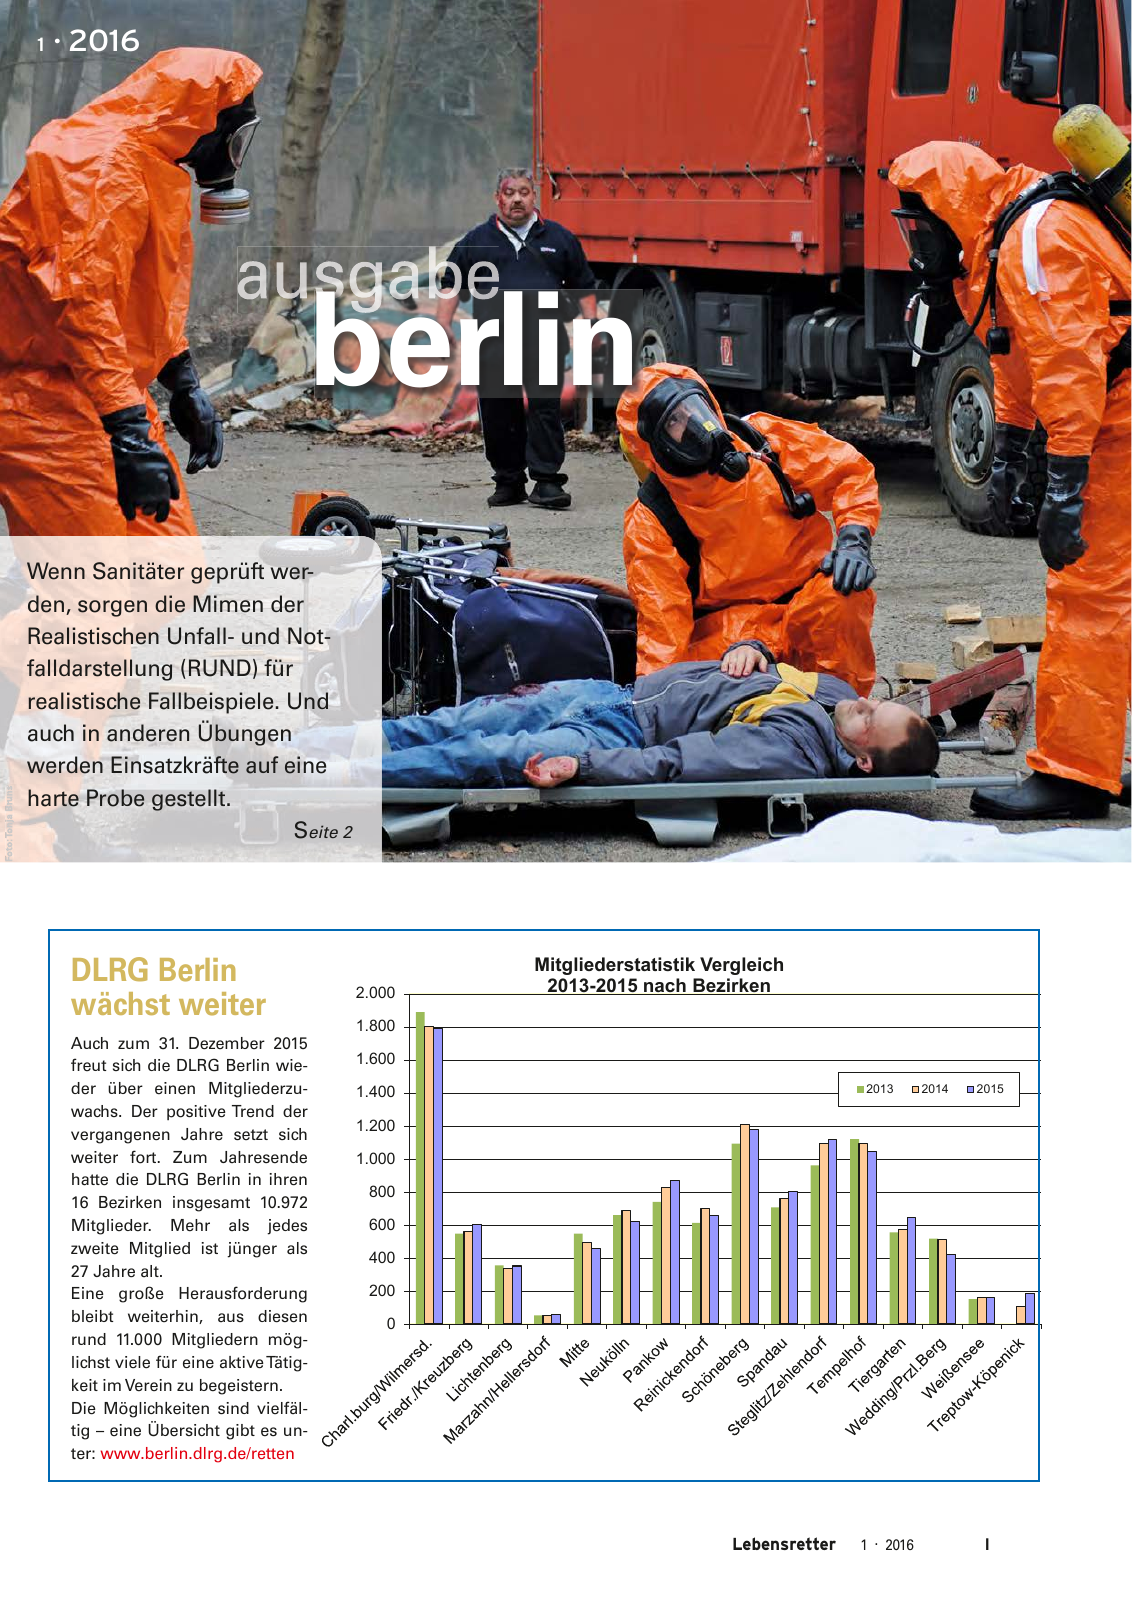 Vorschau Lebensretter 1/2016 - Regionalausgabe Berlin Seite 3